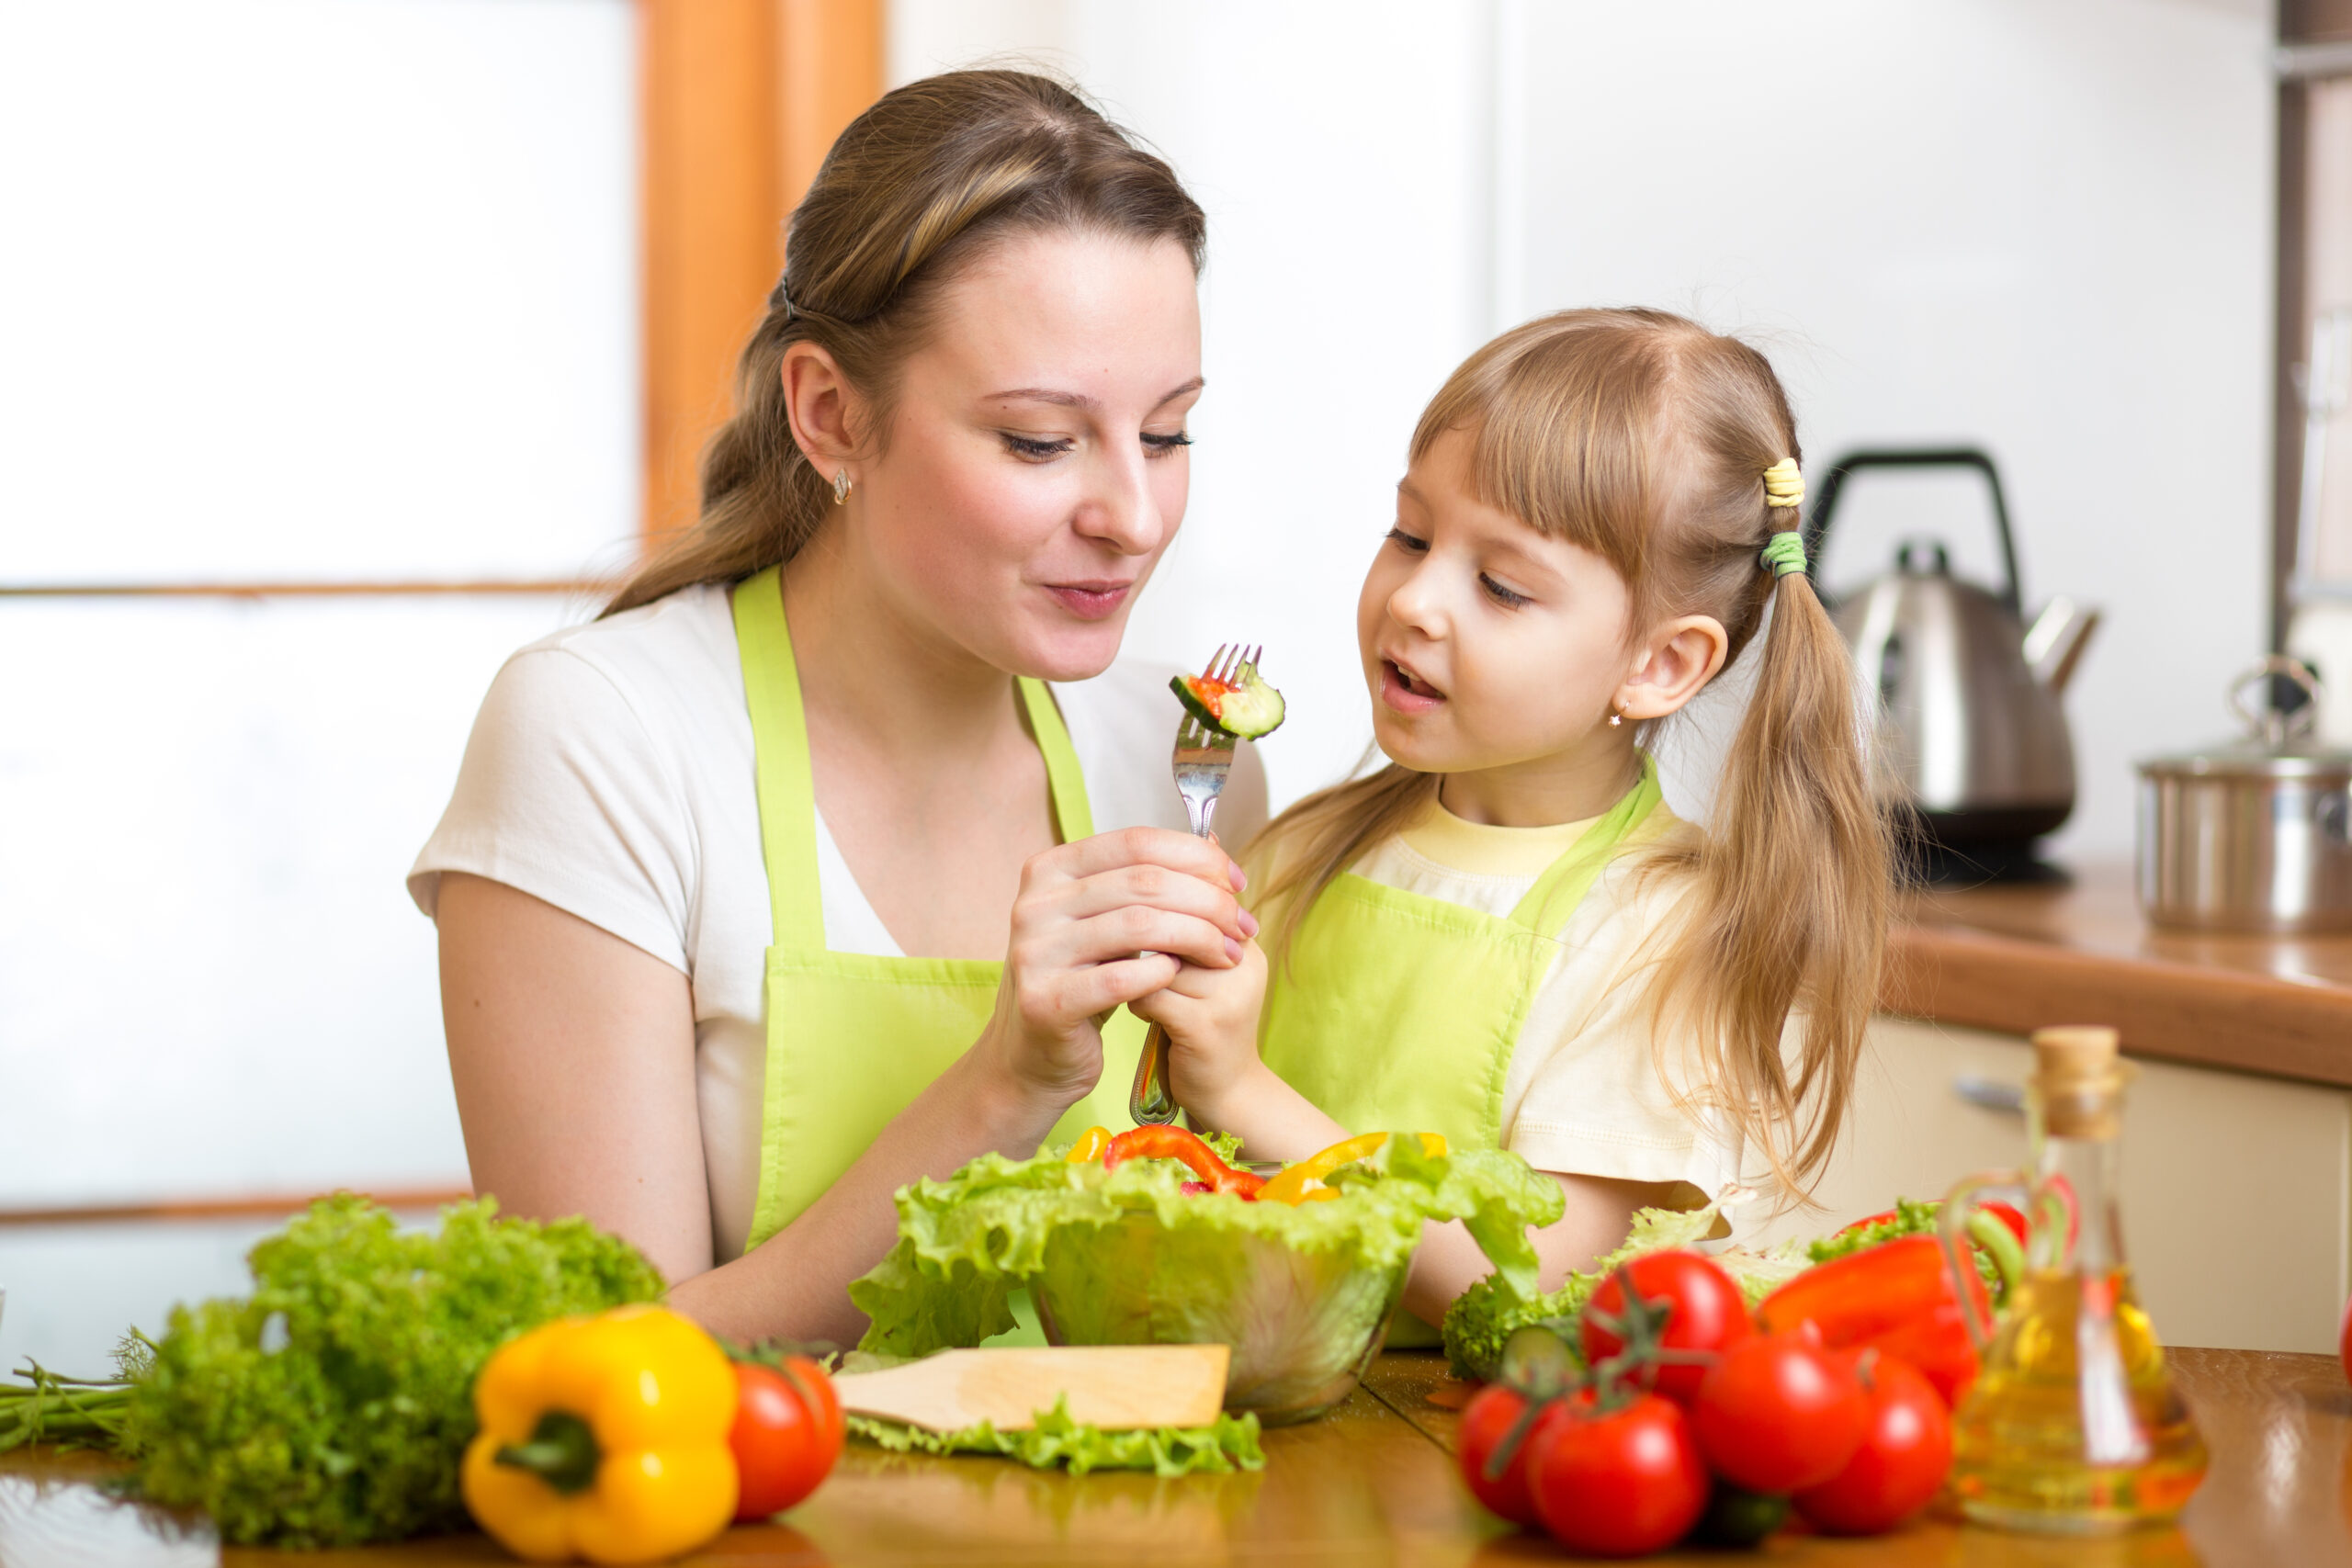 mother child sharing salad lettuce